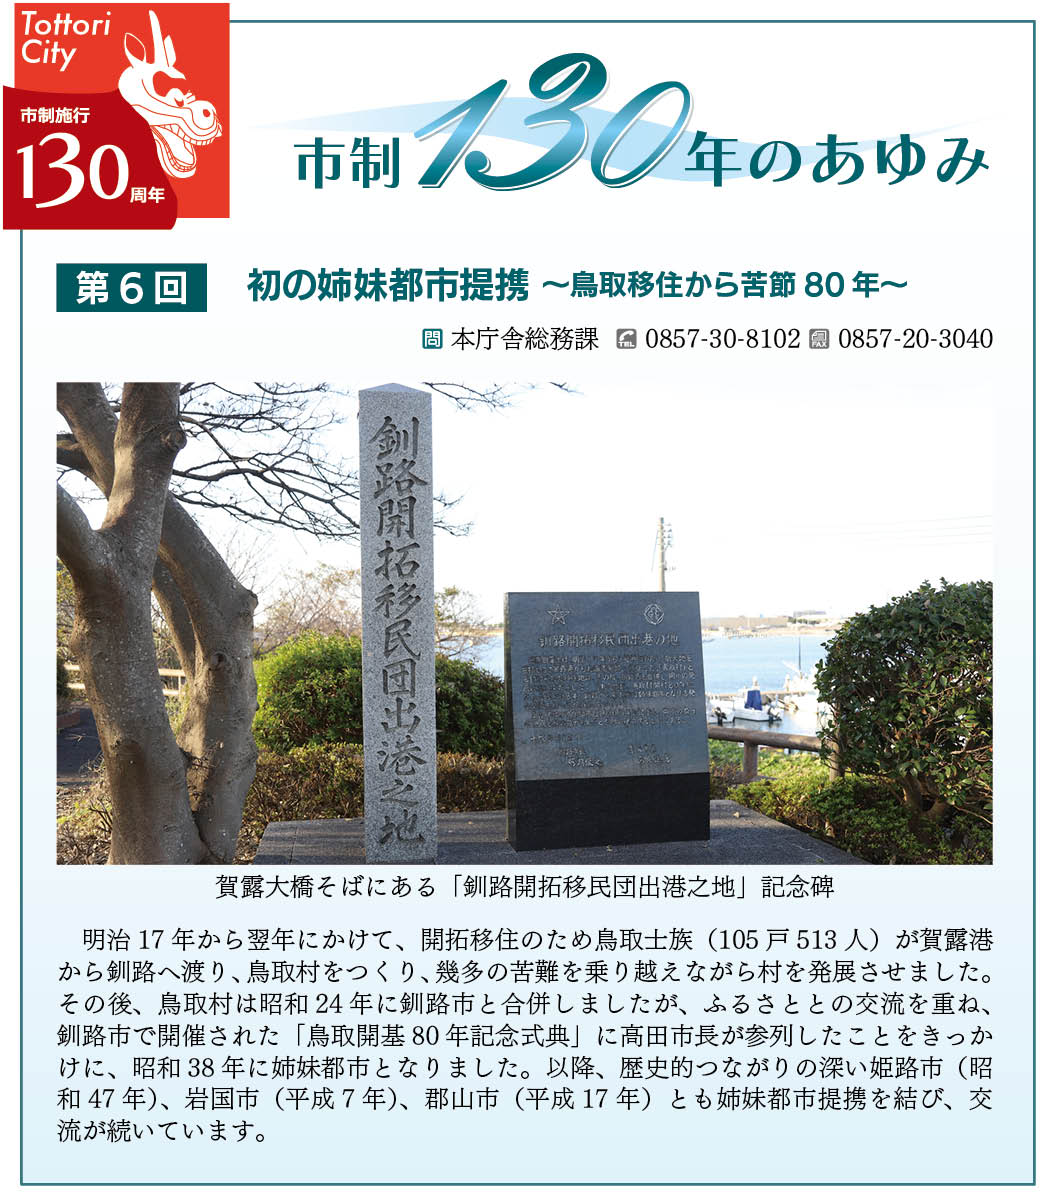 賀露大橋そばにある「釧路開拓移民団出港之地」記念碑